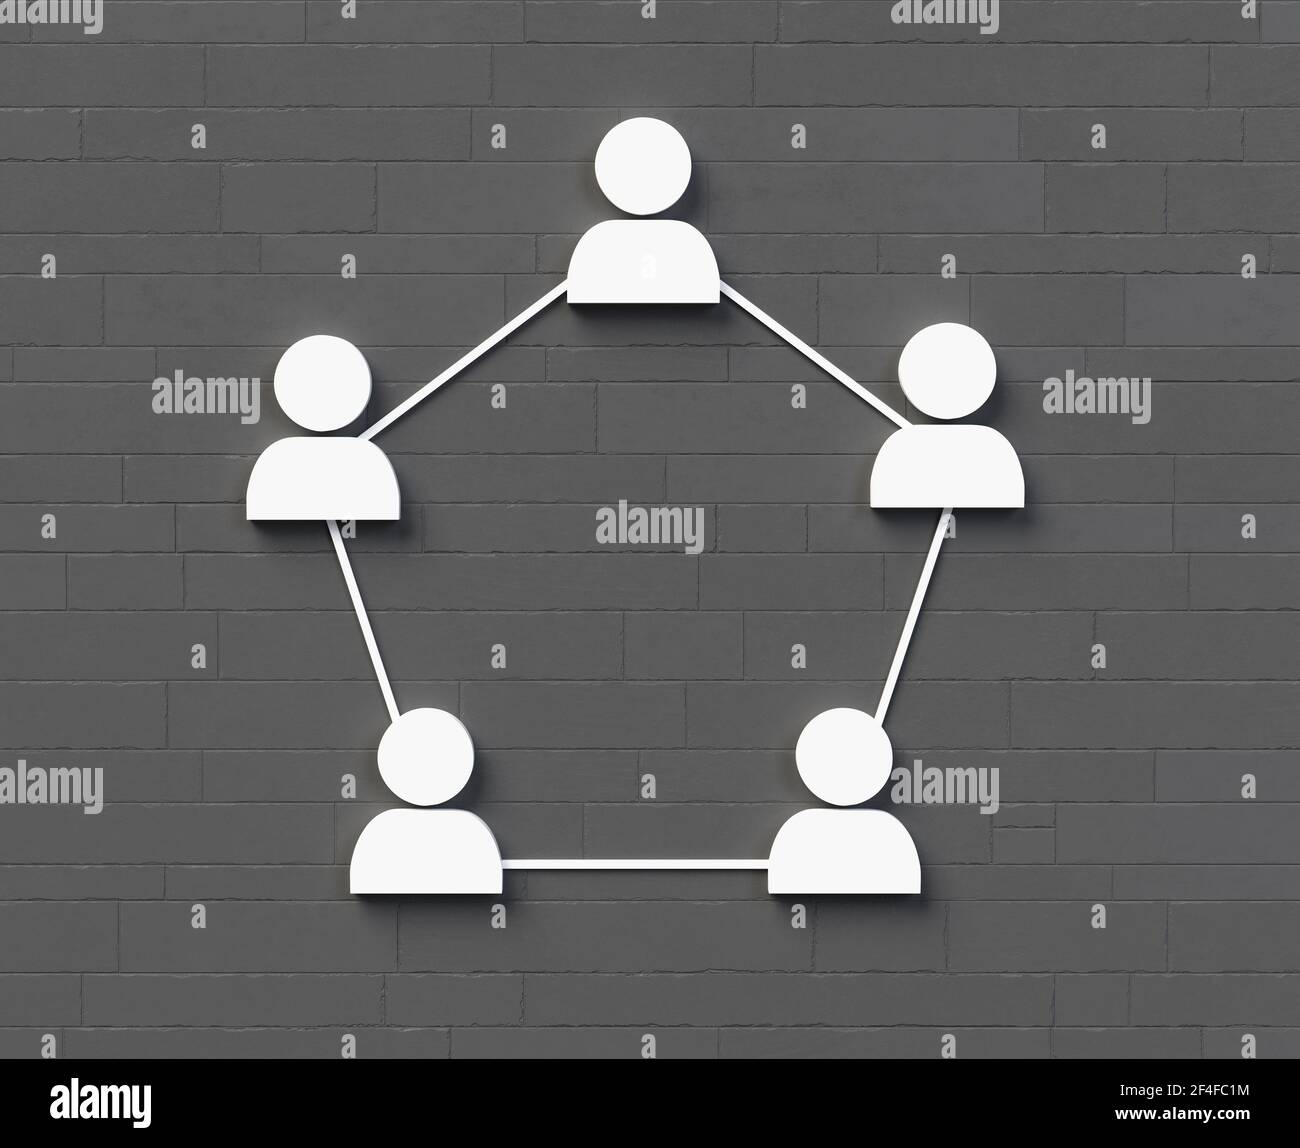 Networking zwischen Menschen oder Team-Business-Symbol auf grauem Stein 3D-Rendering der Wand Stockfoto